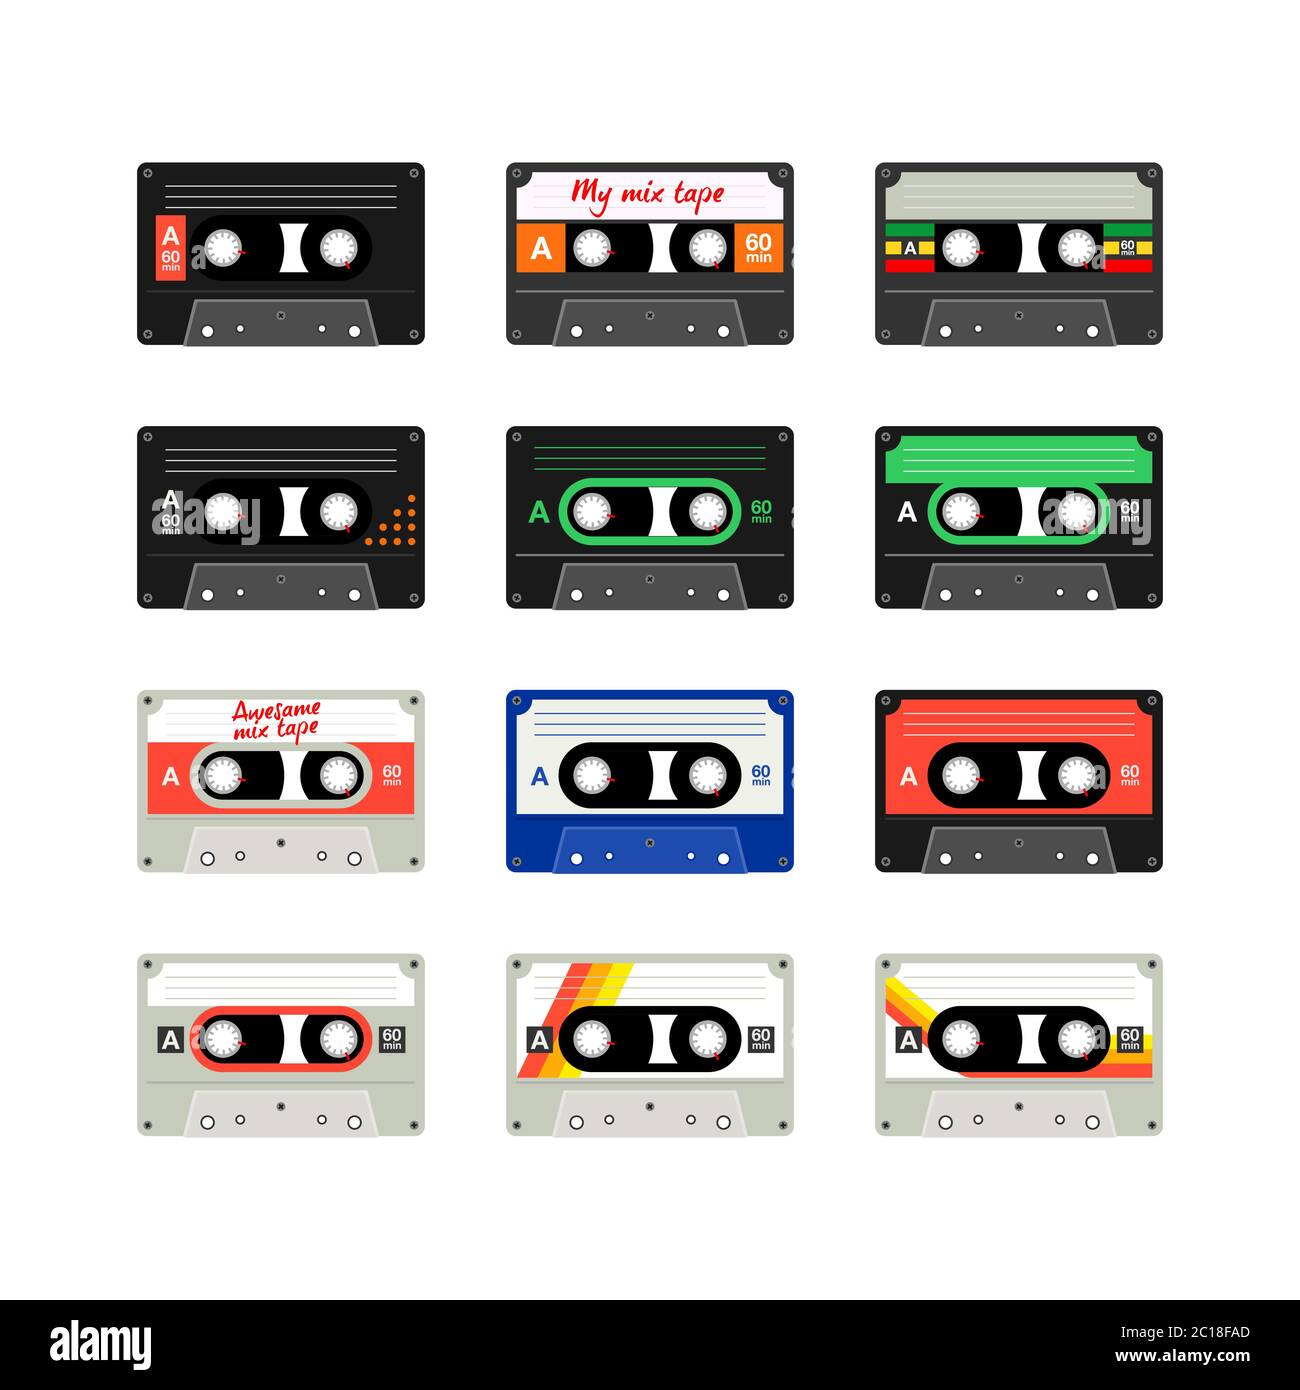 Cassette enregistreur de cassettes dans les années 80 de souvenirs de musique rétro. Design de la mise en page de cassettes de musique oldies. Jeu d'illustrations vectorielles de cassettes vintage. Illustration de Vecteur